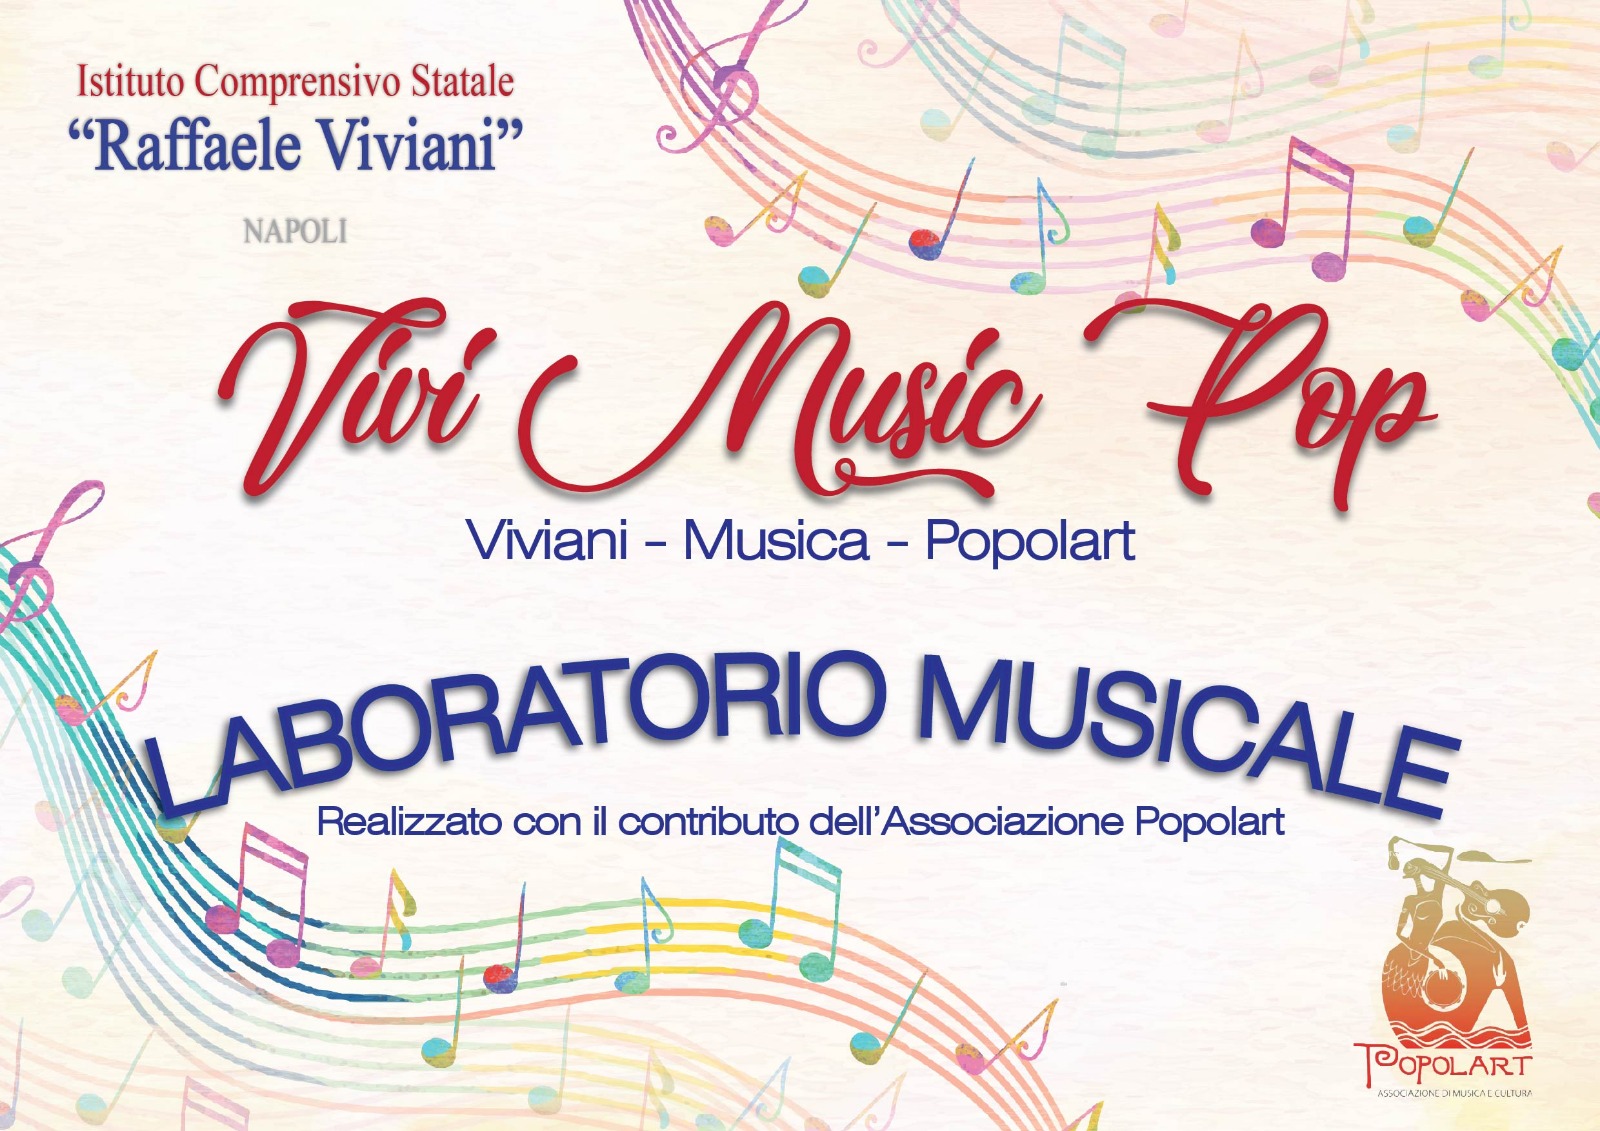  L’Associazione Popolart e l’I.C.S. “R. Viviani” insieme per la “Settimana nazionale della musica a scuola” 